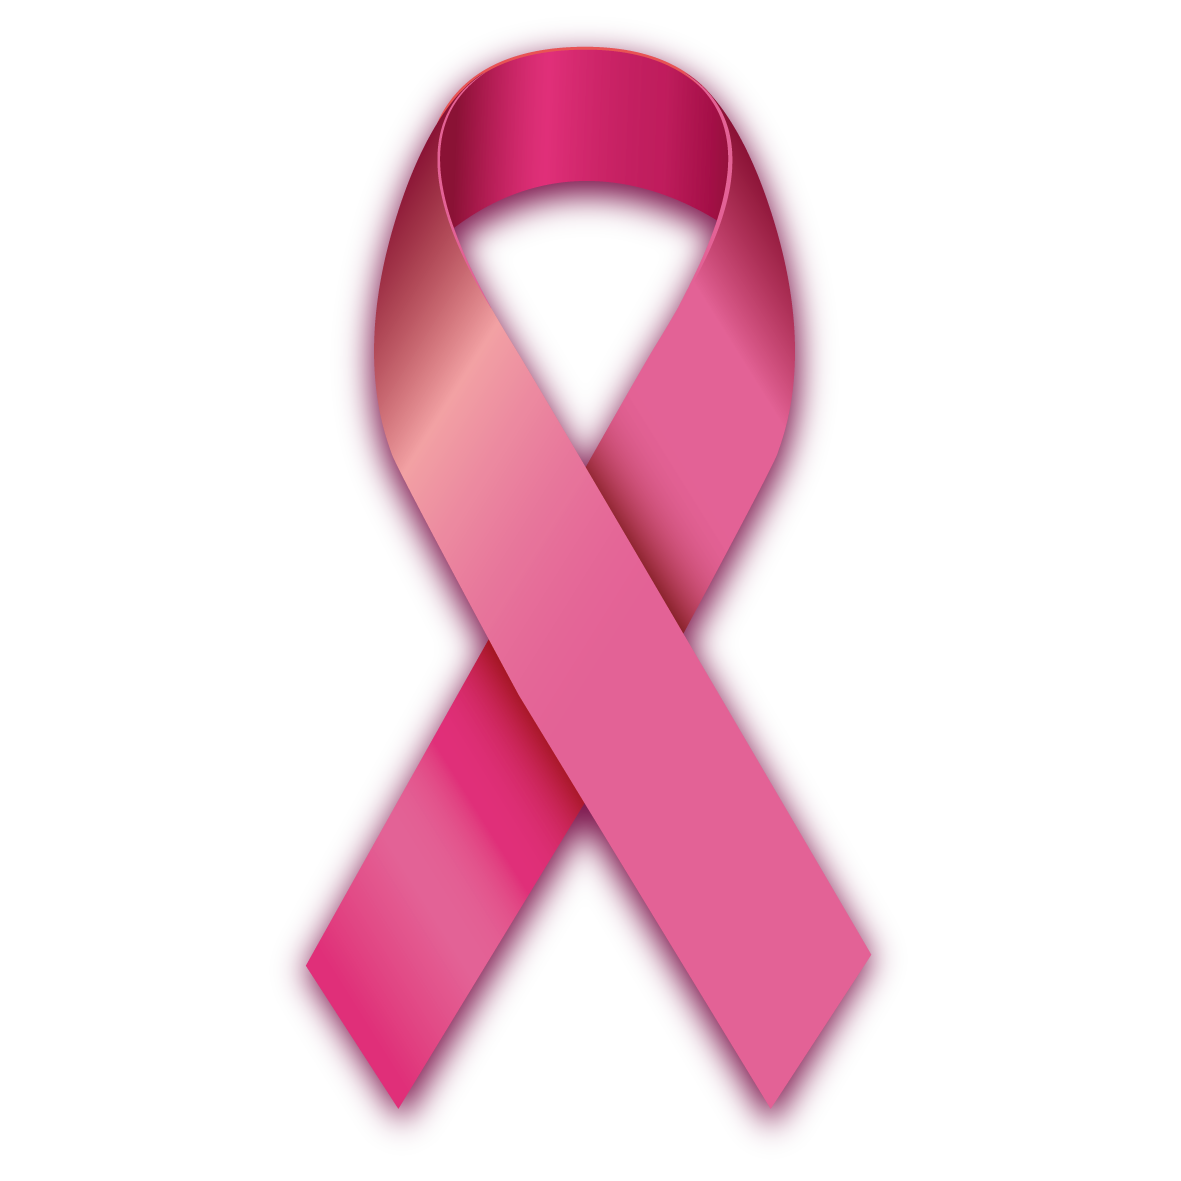 CCJC aprova mamografia adaptada para mulheres com deficiência